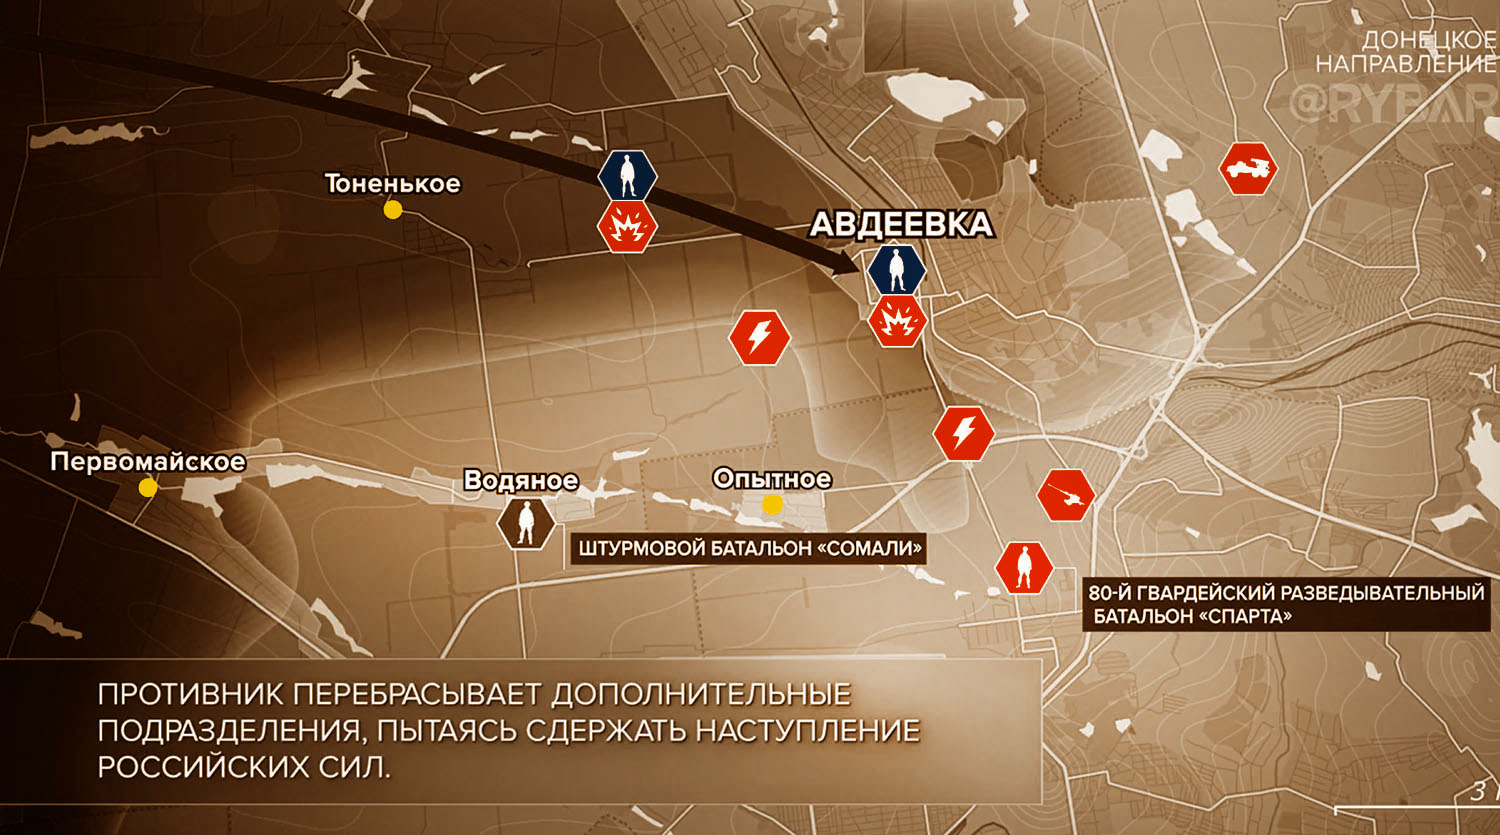 Карта боевых действий на Украине, Донецкое направление, к утру 10.11.23 г. Карта СВО от «Рыбарь».